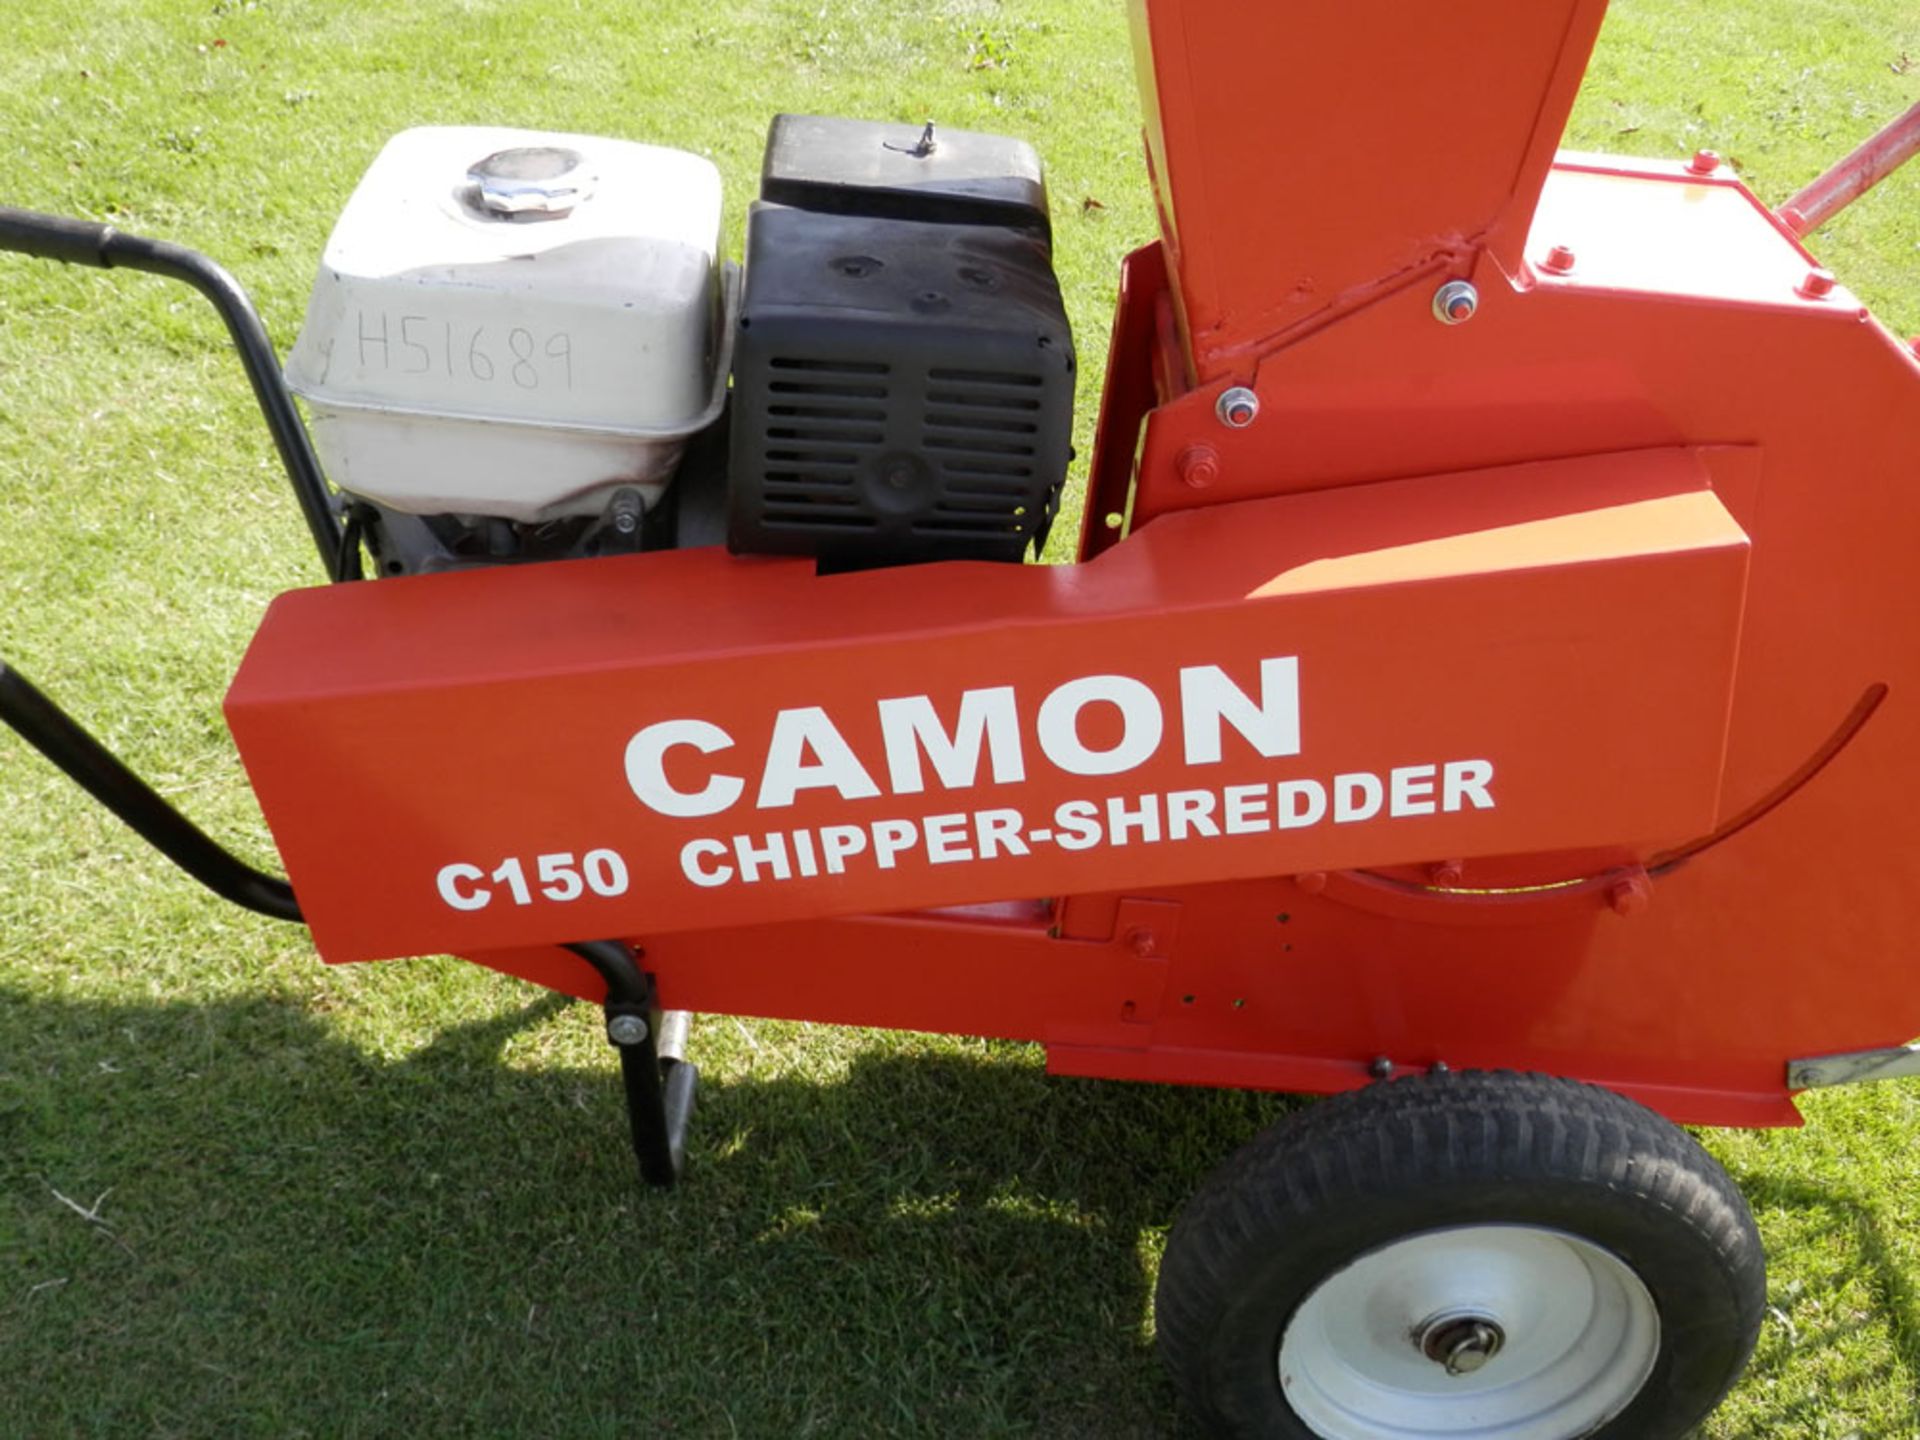 Camon C150 3.5"" Chipper Shredder - Image 4 of 5